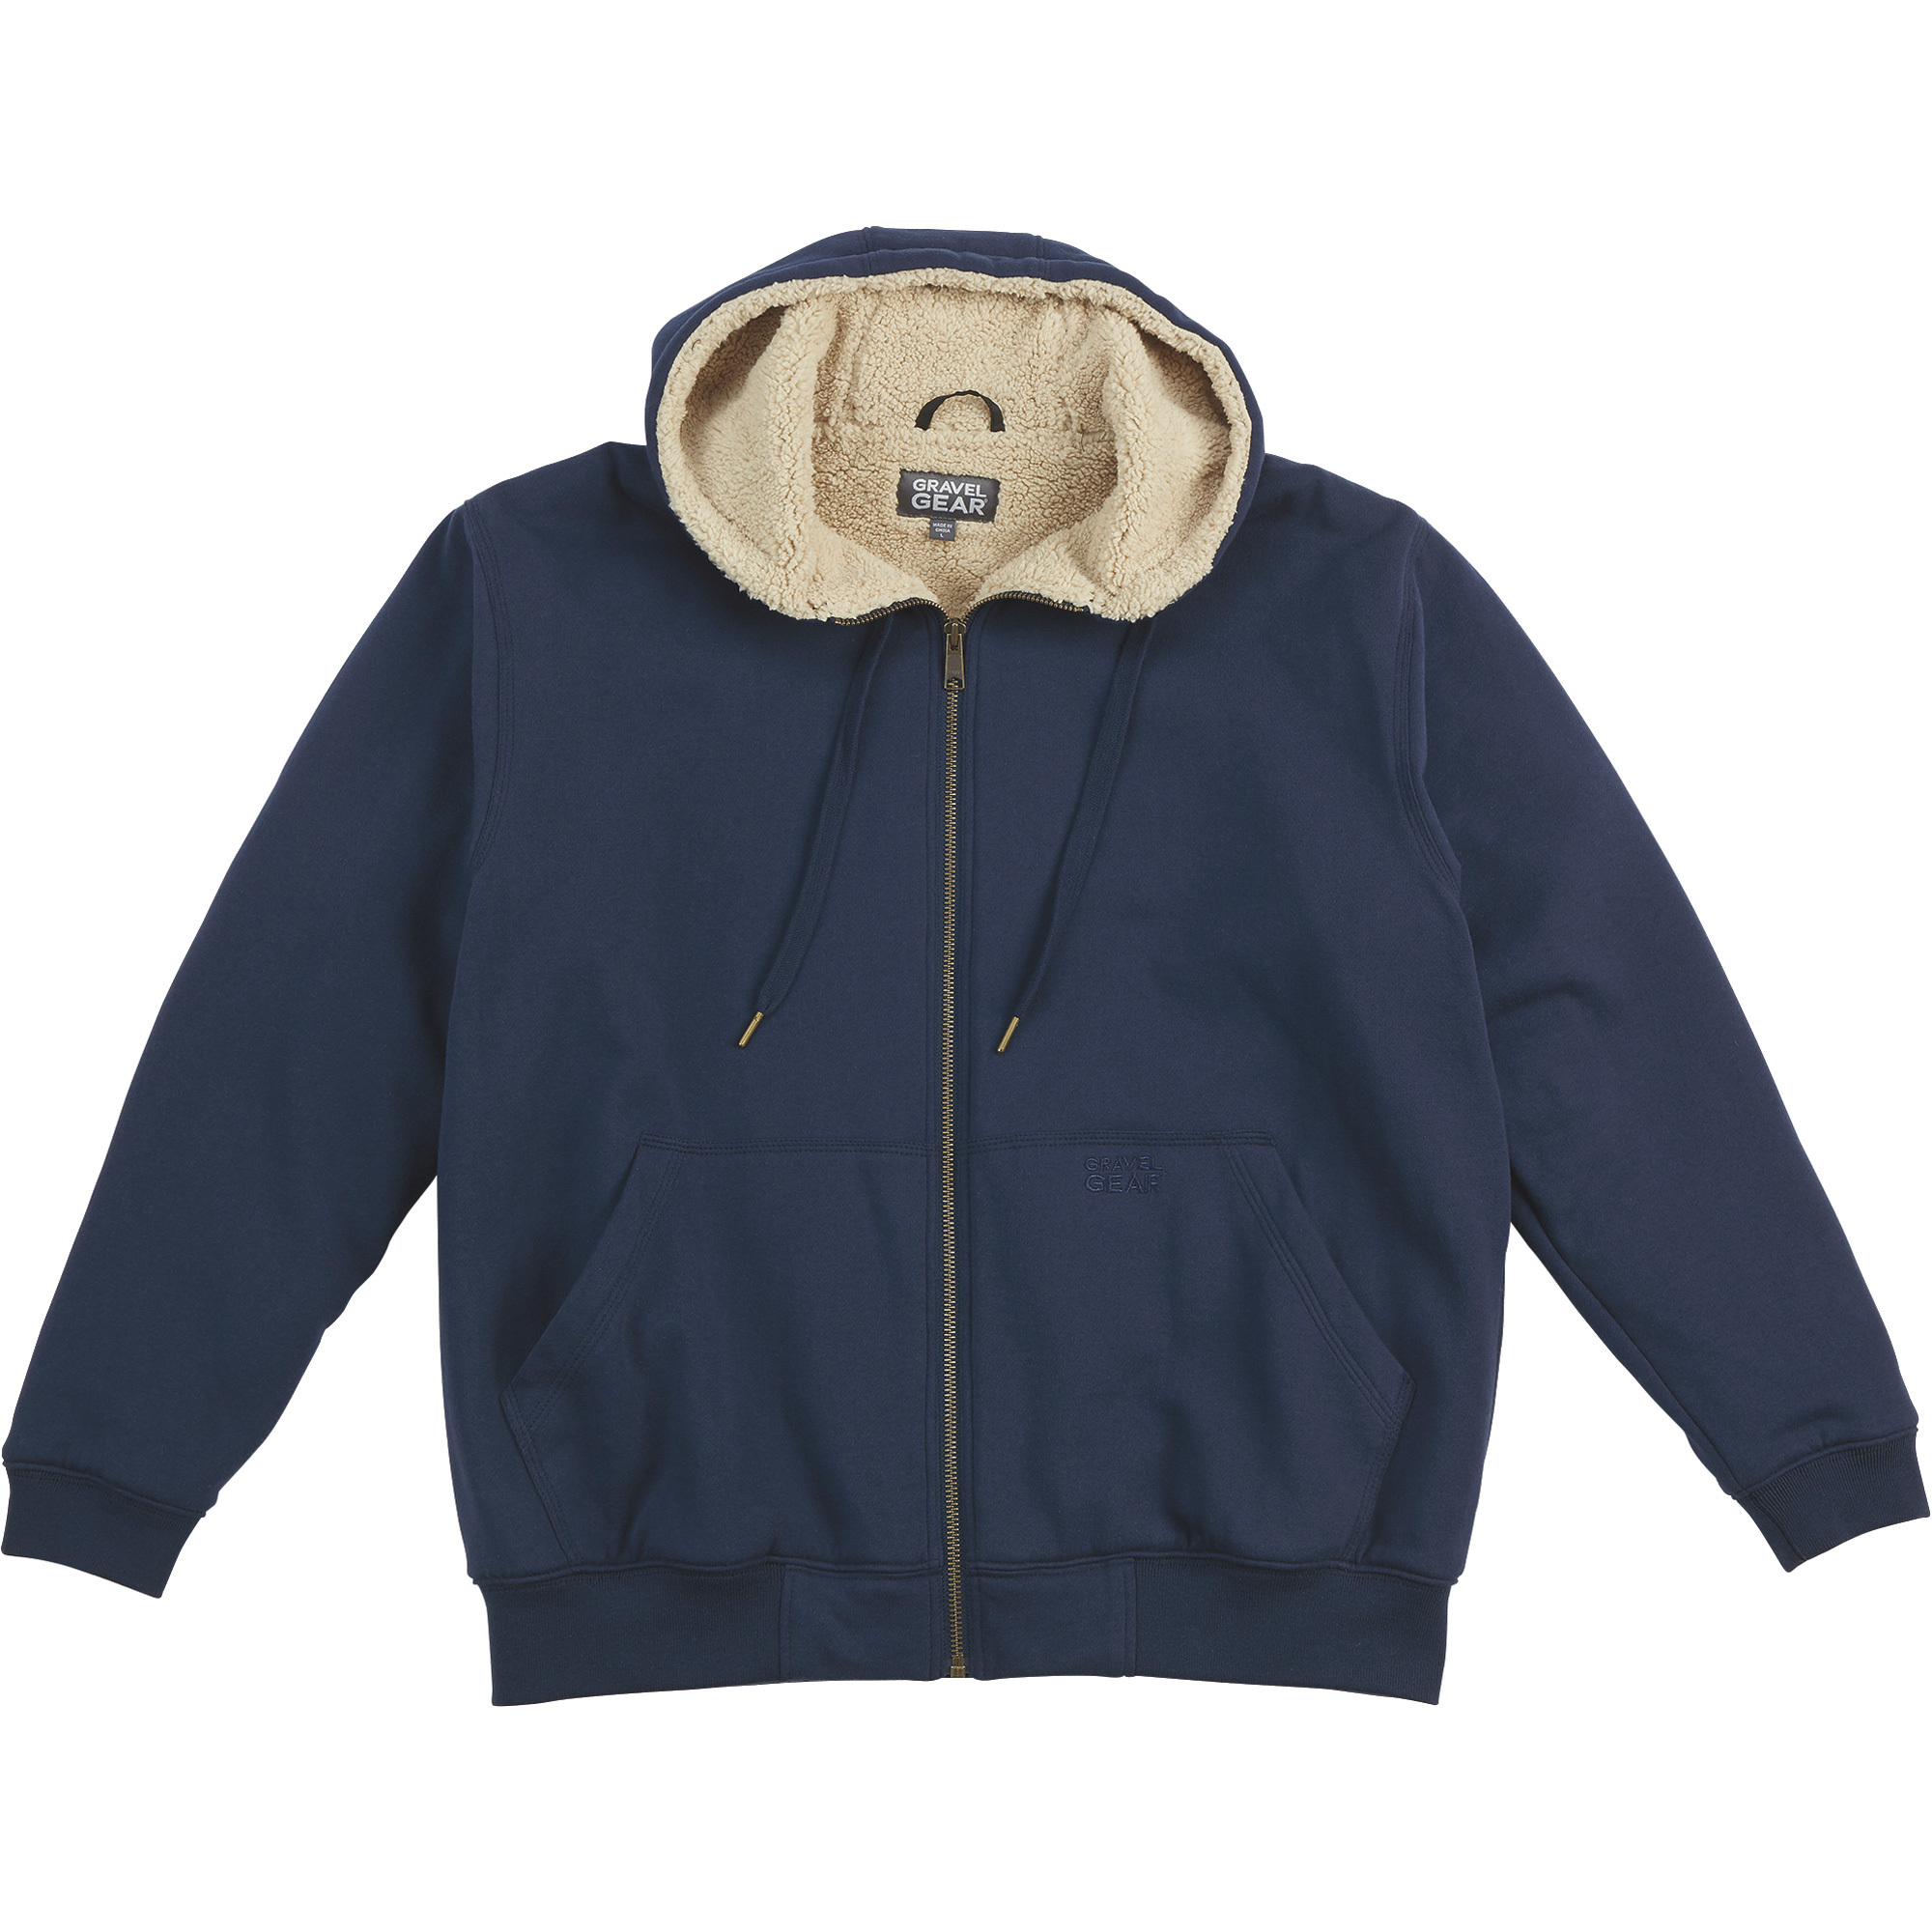 Gravel Gear Men's Sherpa-Lined Full-Zip Hooded Sweatshirt â Navy, Medium